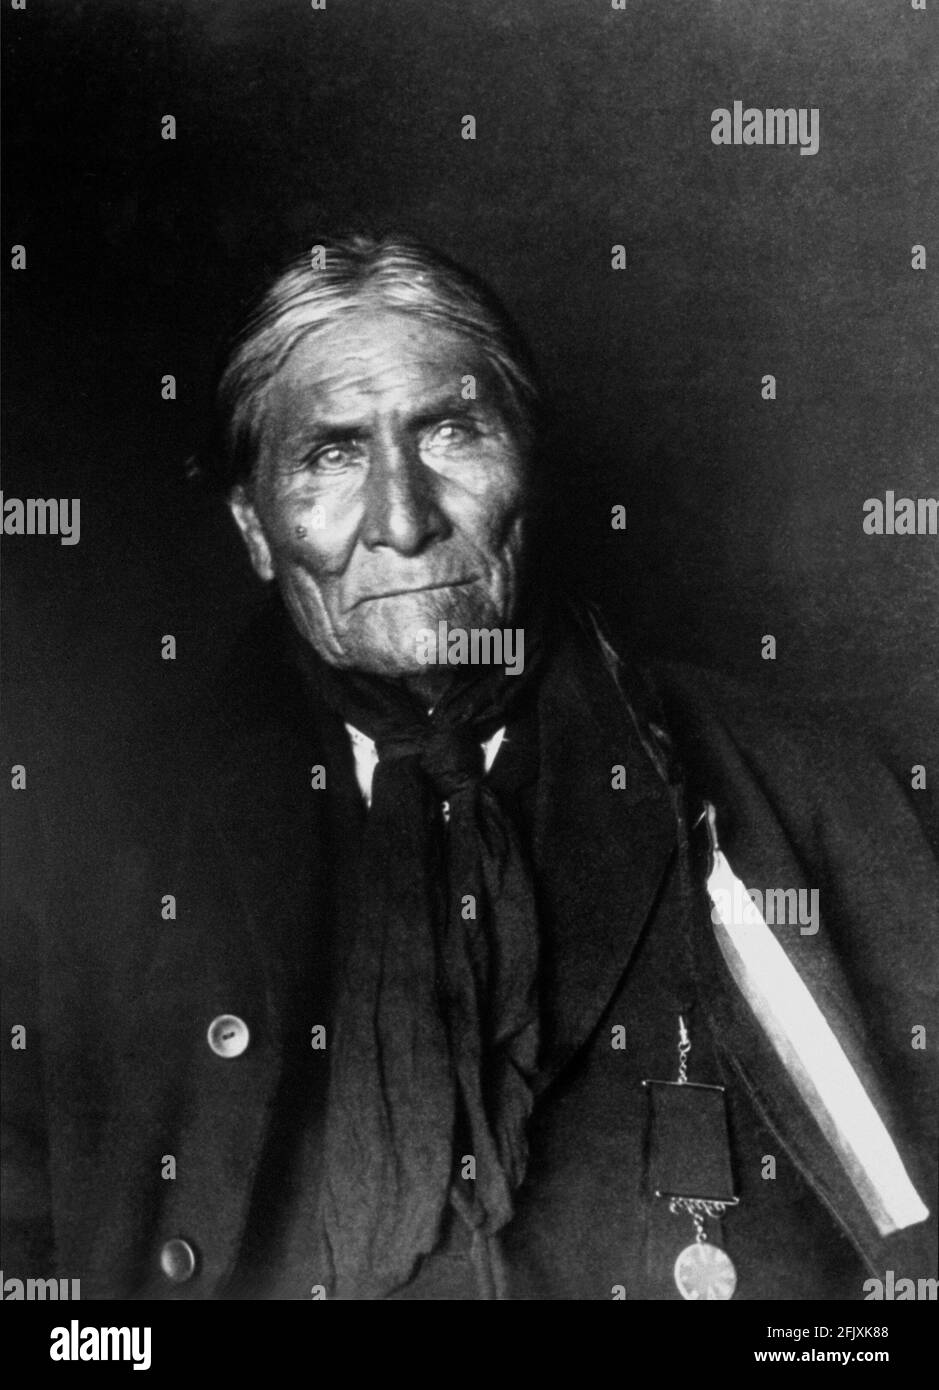 1900 ca., USA : der Küchenchef GERONIMO , berühmter Chiricahua Apache-Kriegsführer. Nach zahlreichen Flucht- und Ausflüchten wurde Geronimo schließlich 1886 gefangen genommen. - VECCHIO SELVAGGIO WEST - Old WILD - INDIANO PELLEROSSA - Indianer - Porträt - ritratto - Medaillon - Medaille - Foulard - Bandanna ---- Archivio GBB Stockfoto